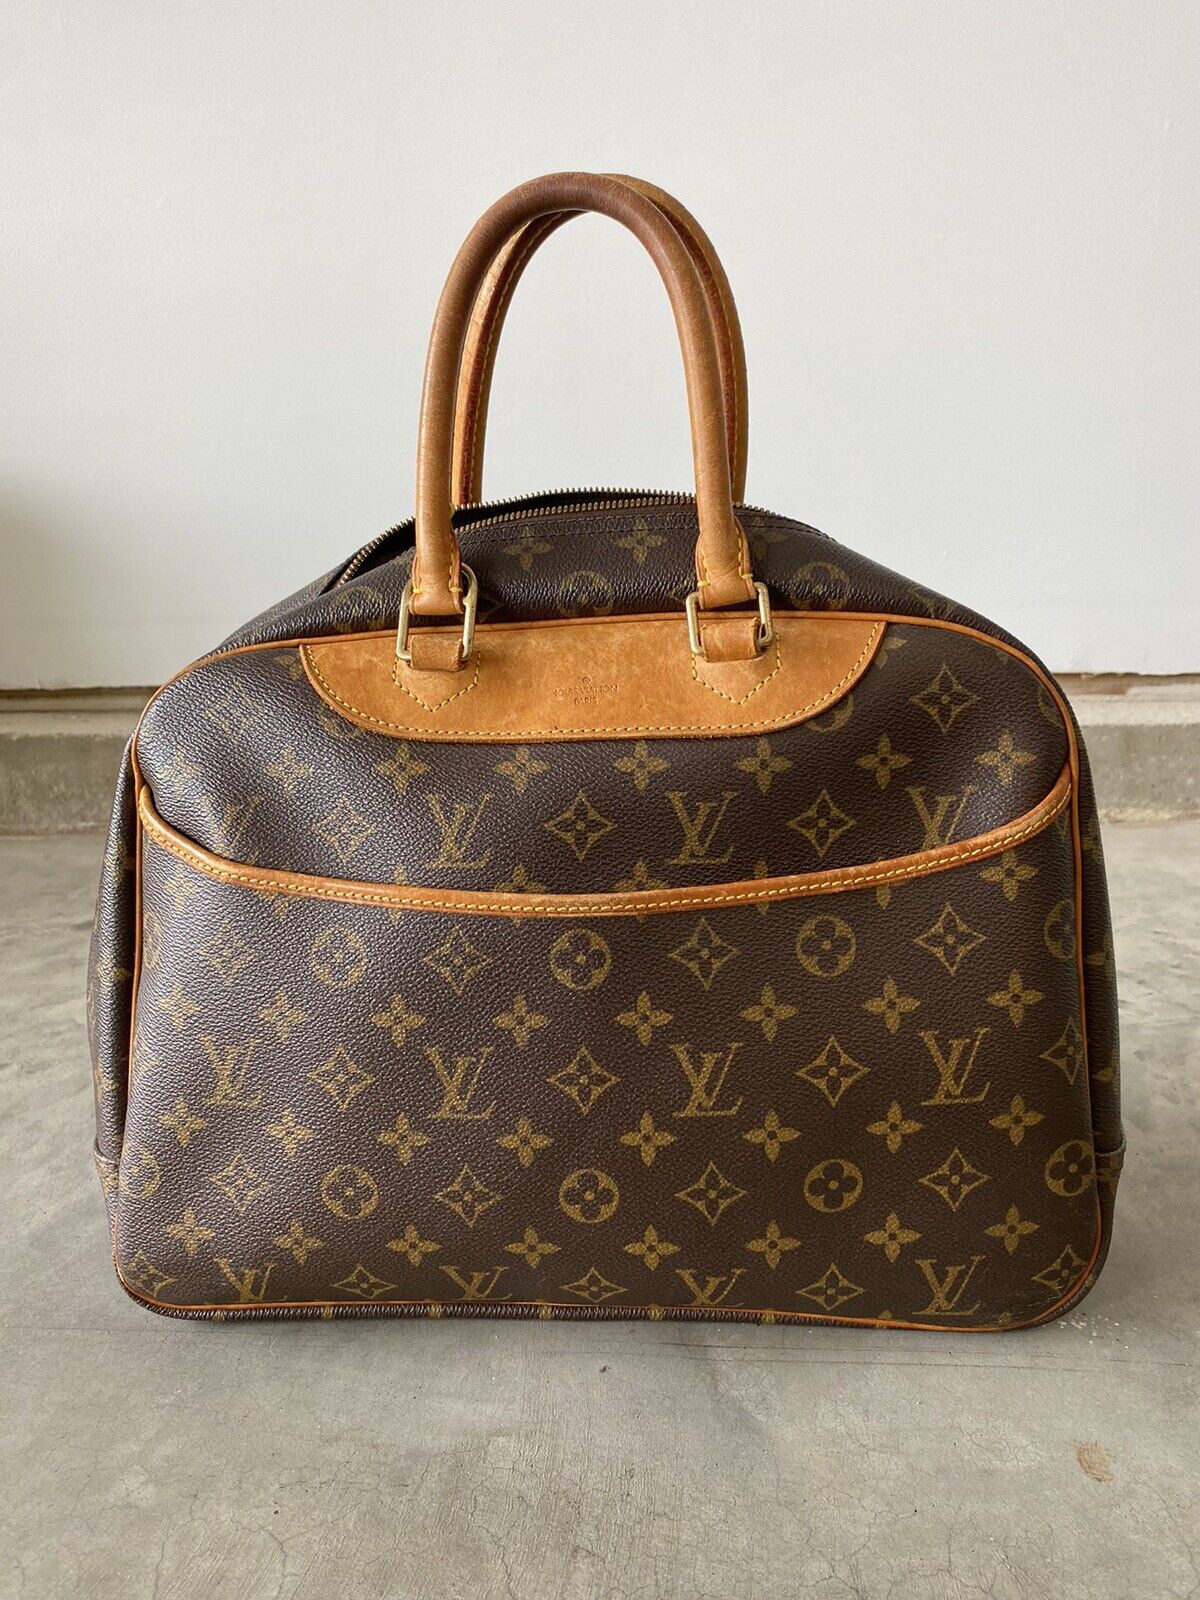 Authentic Louis Vuitton Monogram Deauville Hand Bag 